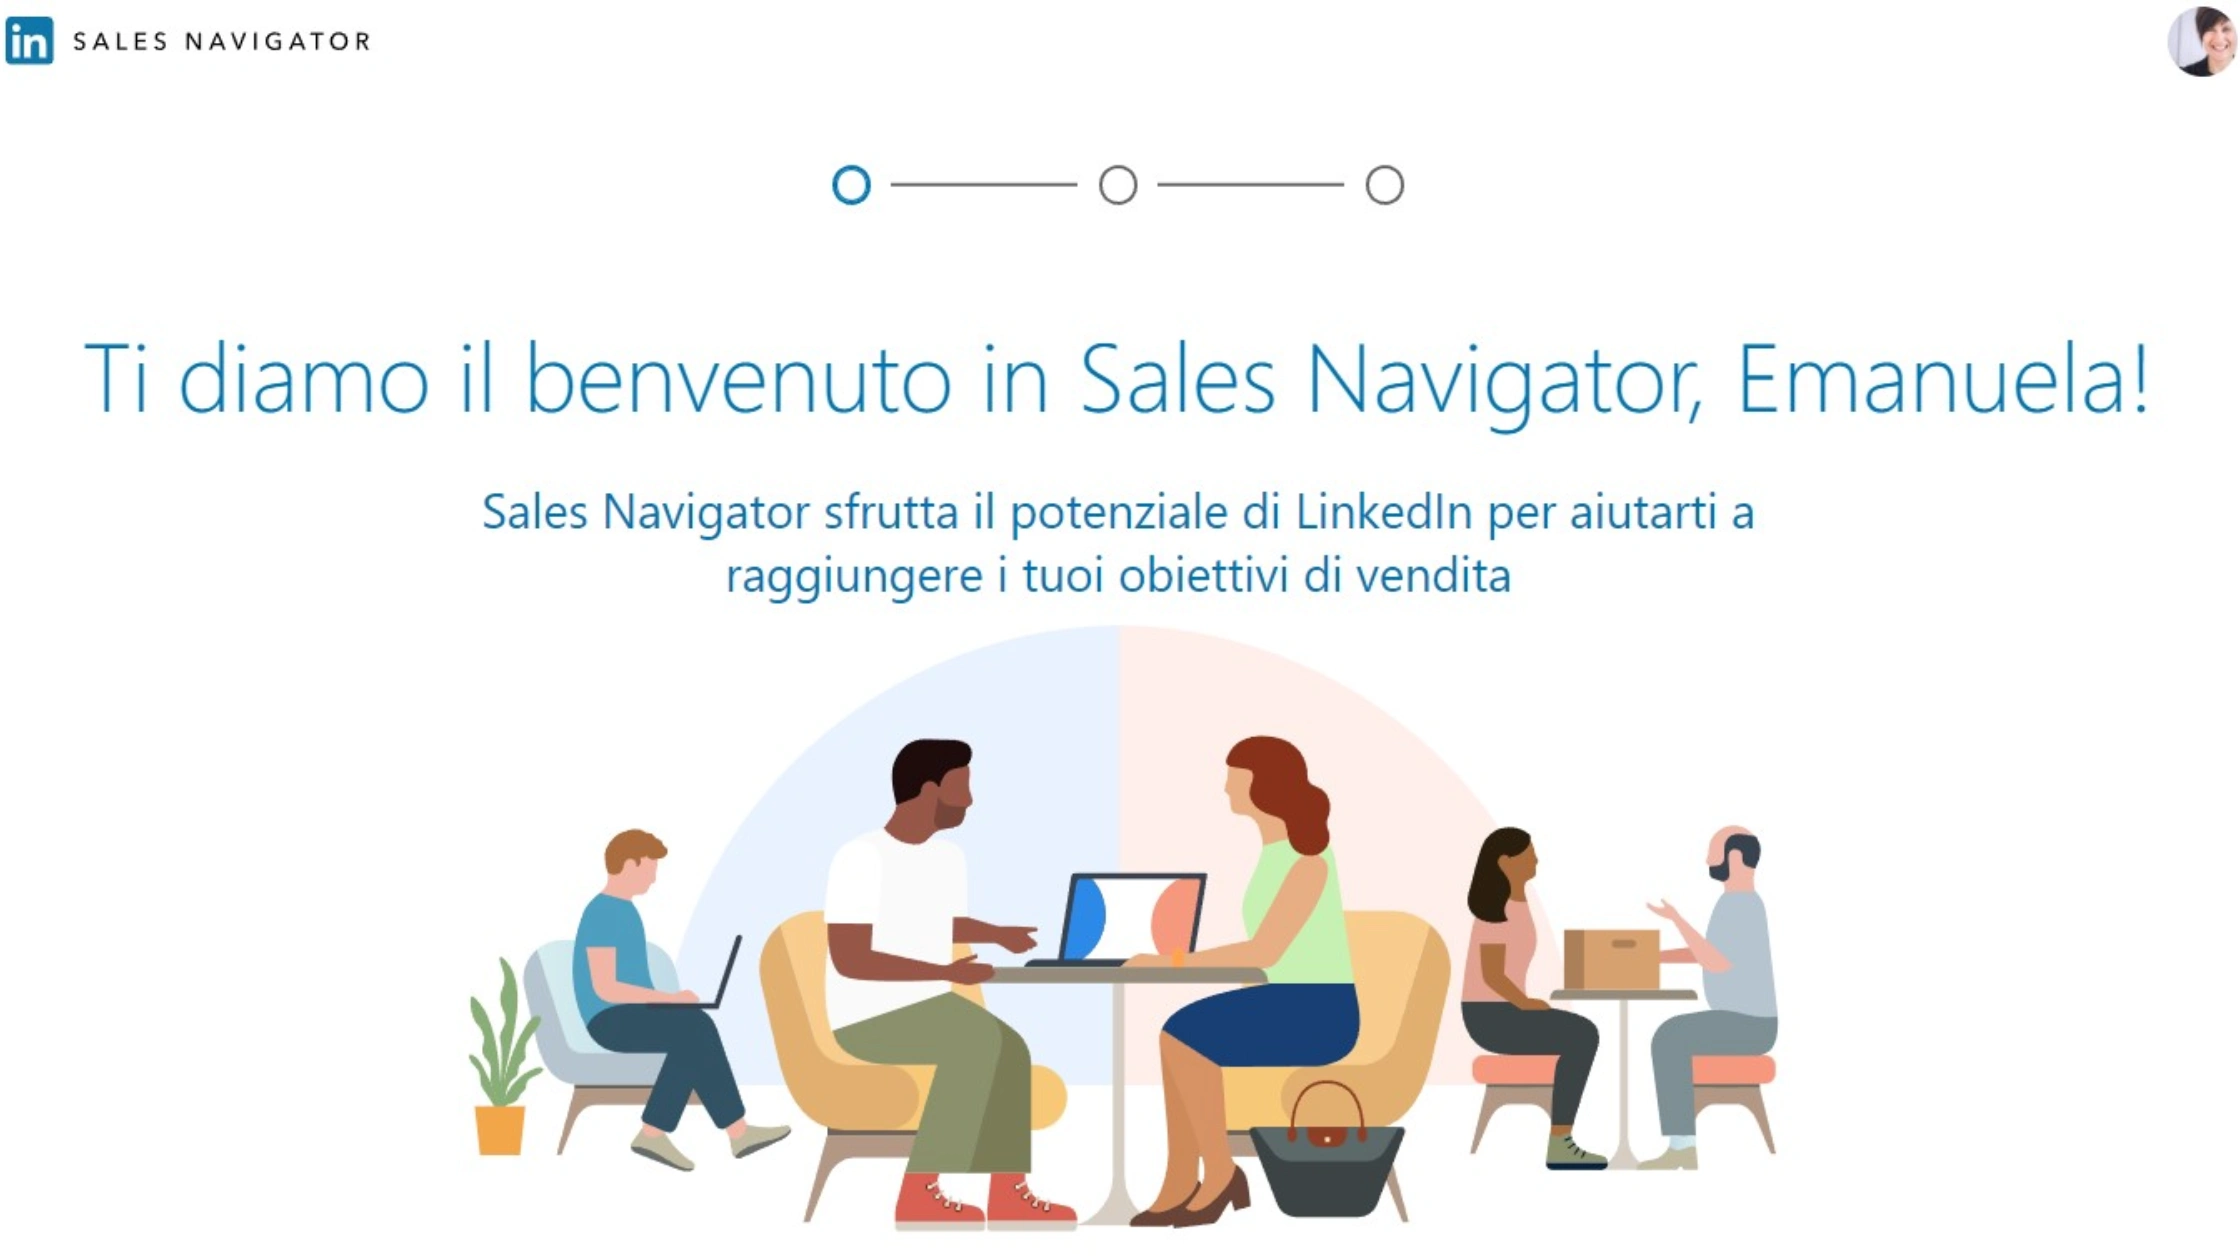 linkedin sales navigator